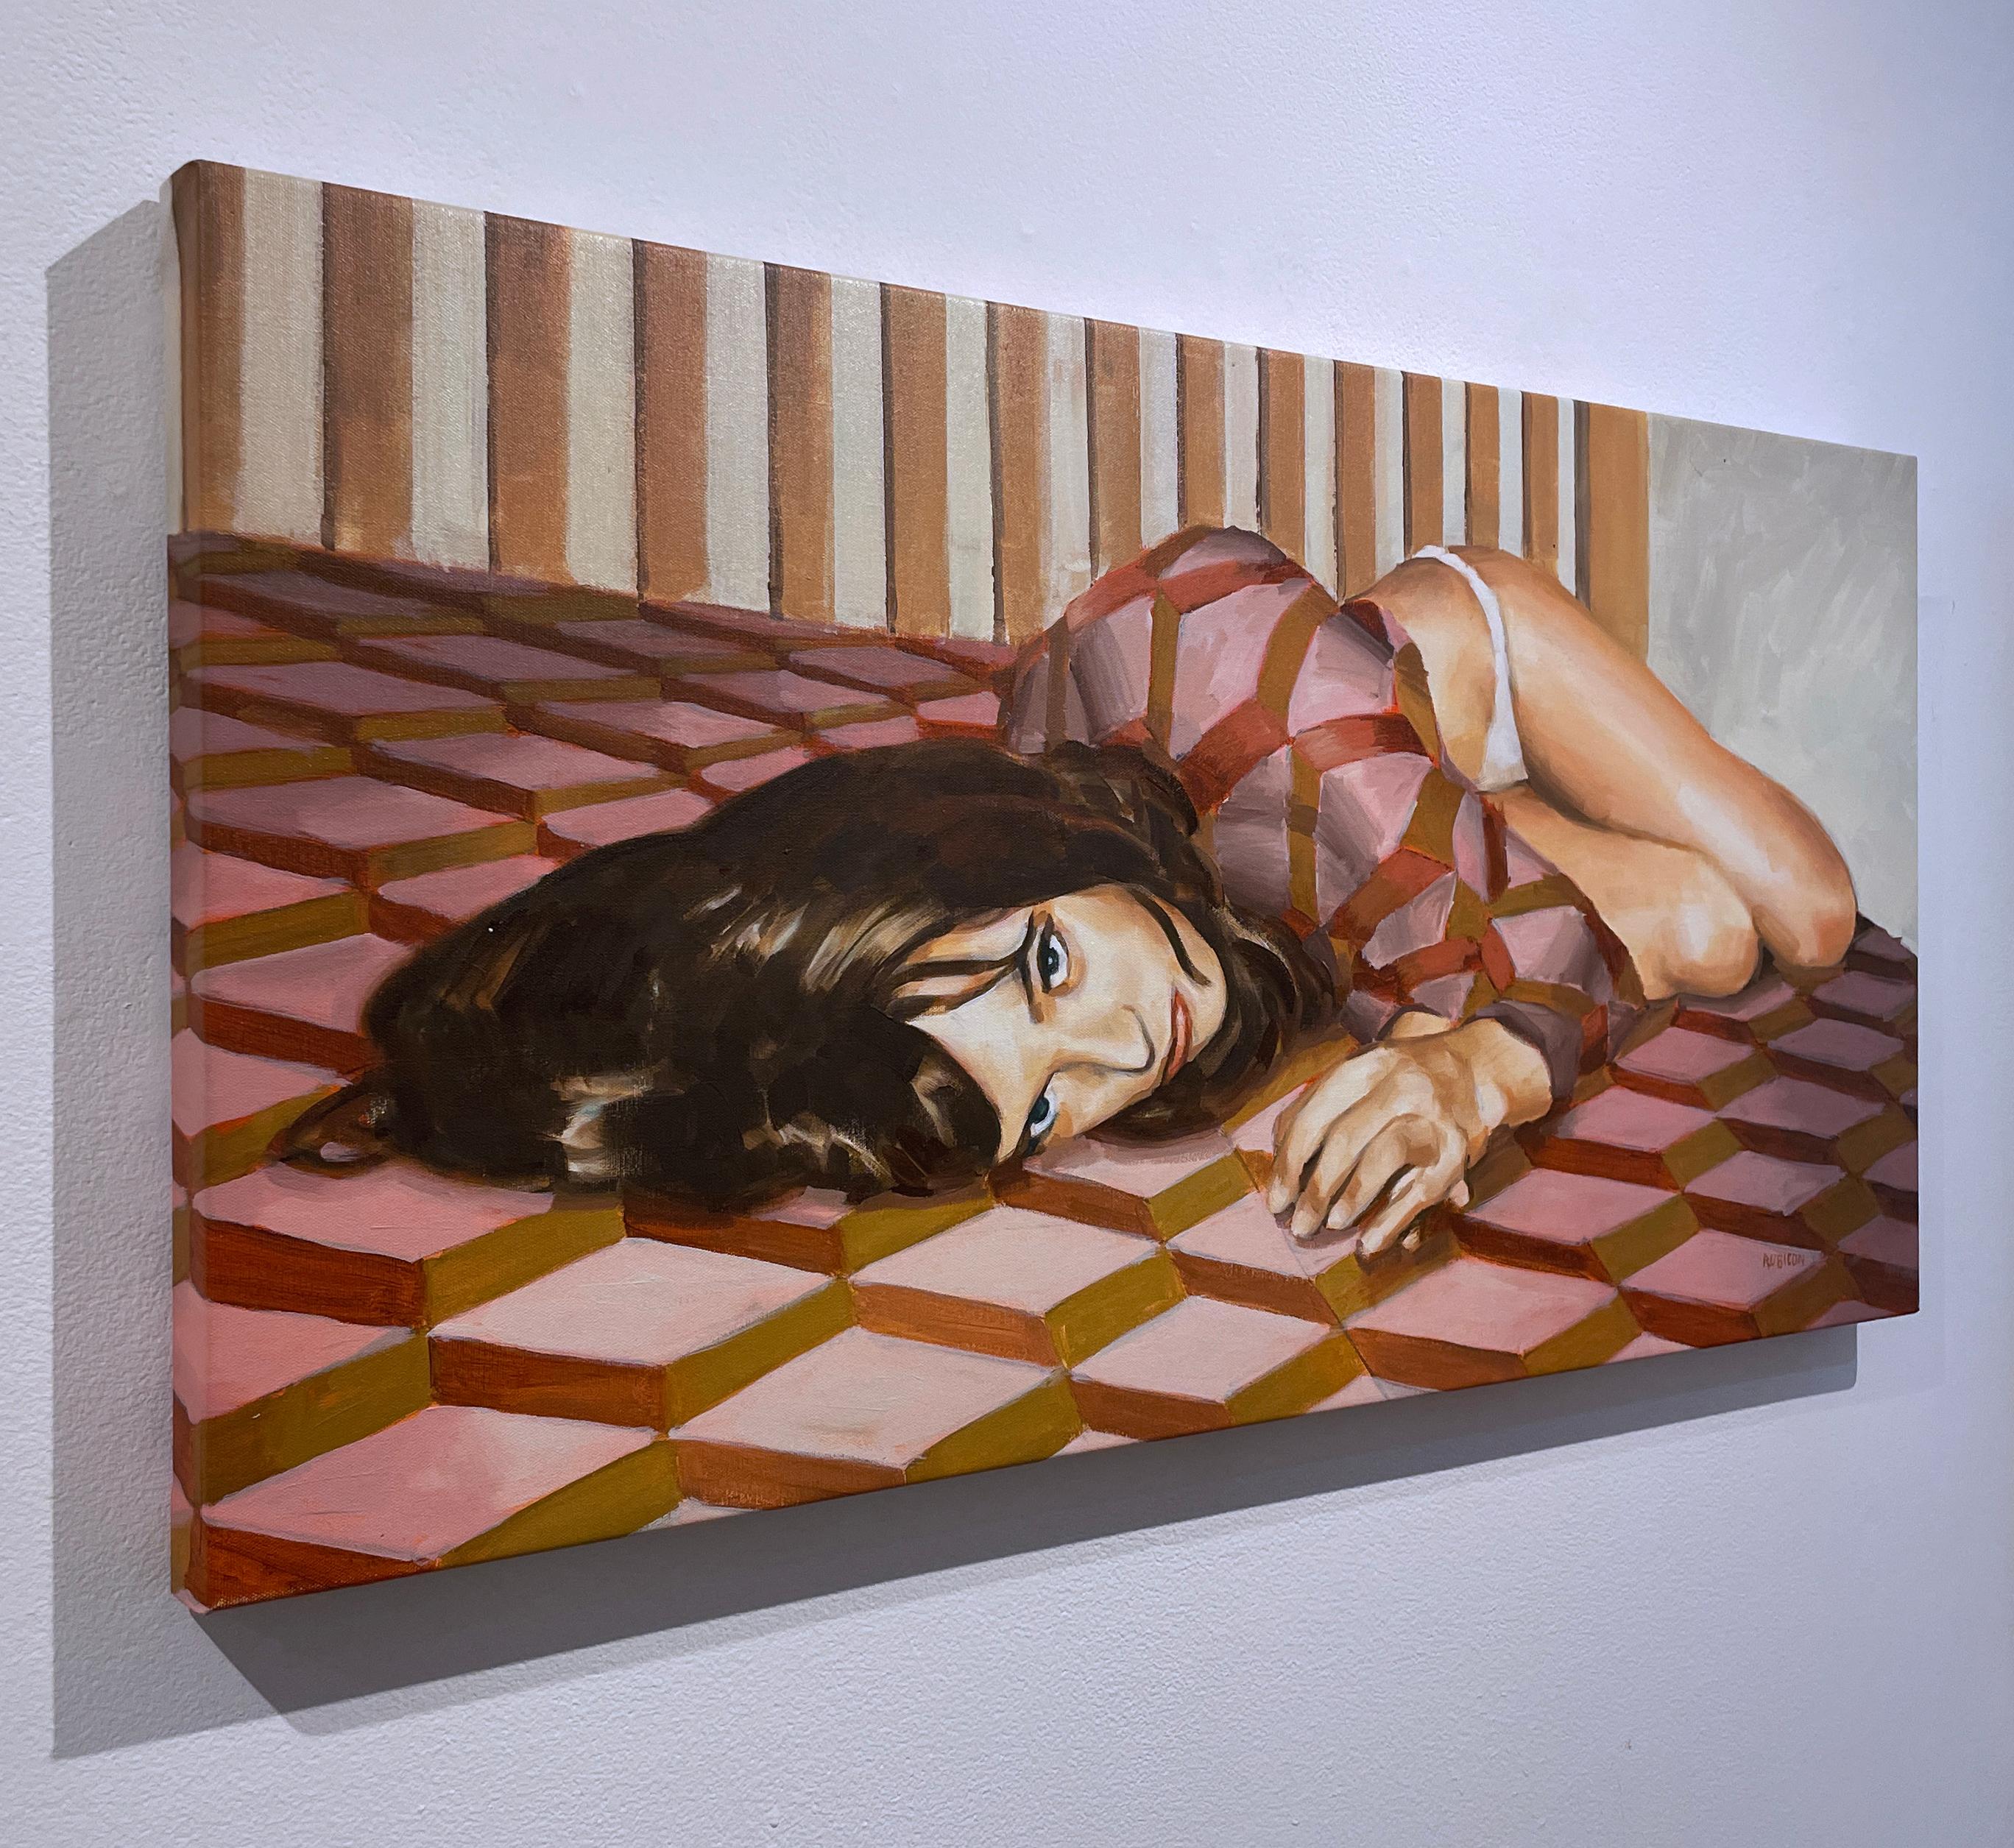 Sheets (2022) huile sur toile, figuratif, femme sur le lit, motif rose & brun doré. - Contemporain Painting par RU8ICON1